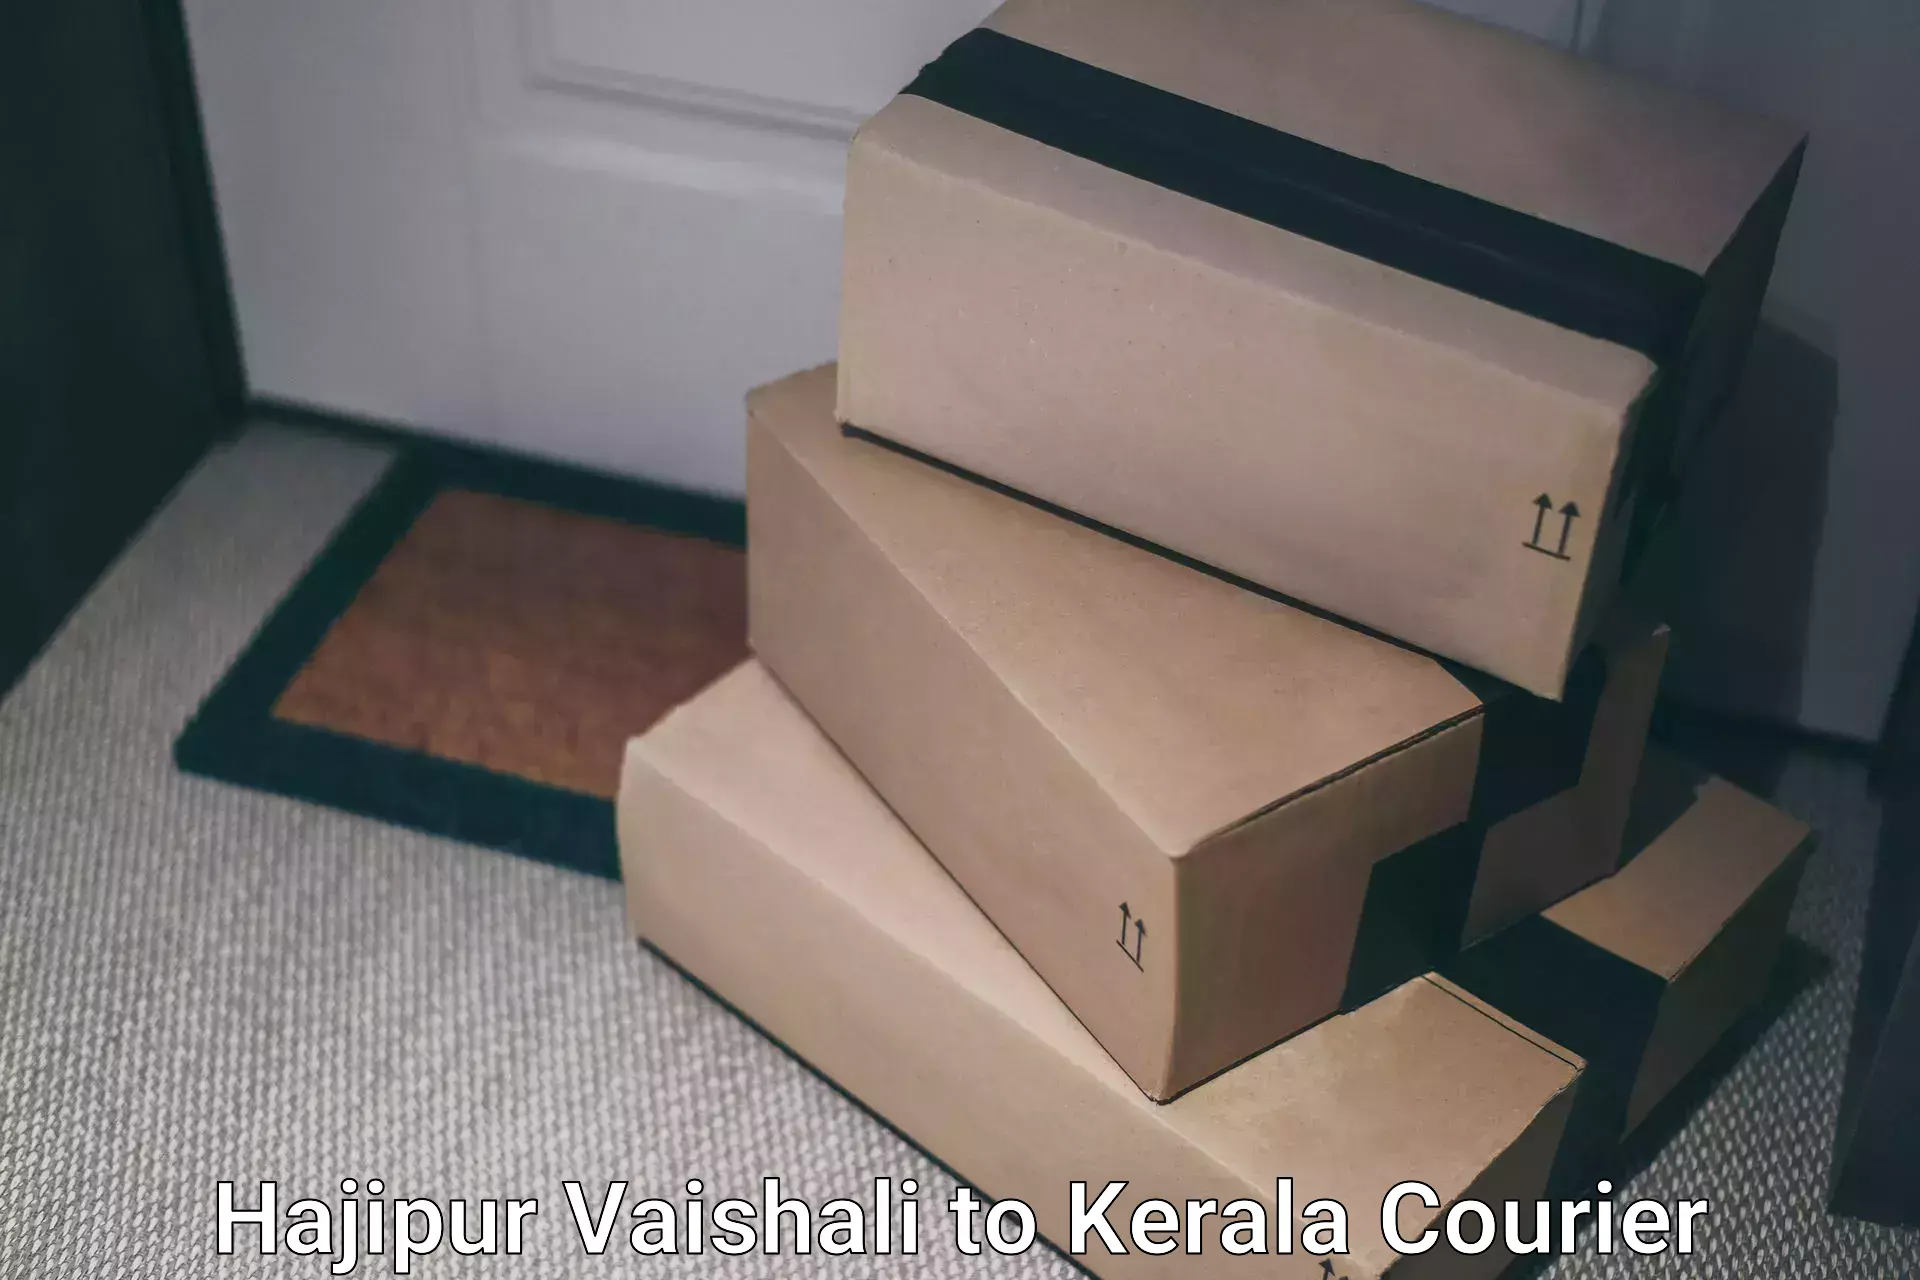 Bulk courier orders Hajipur Vaishali to Ernakulam